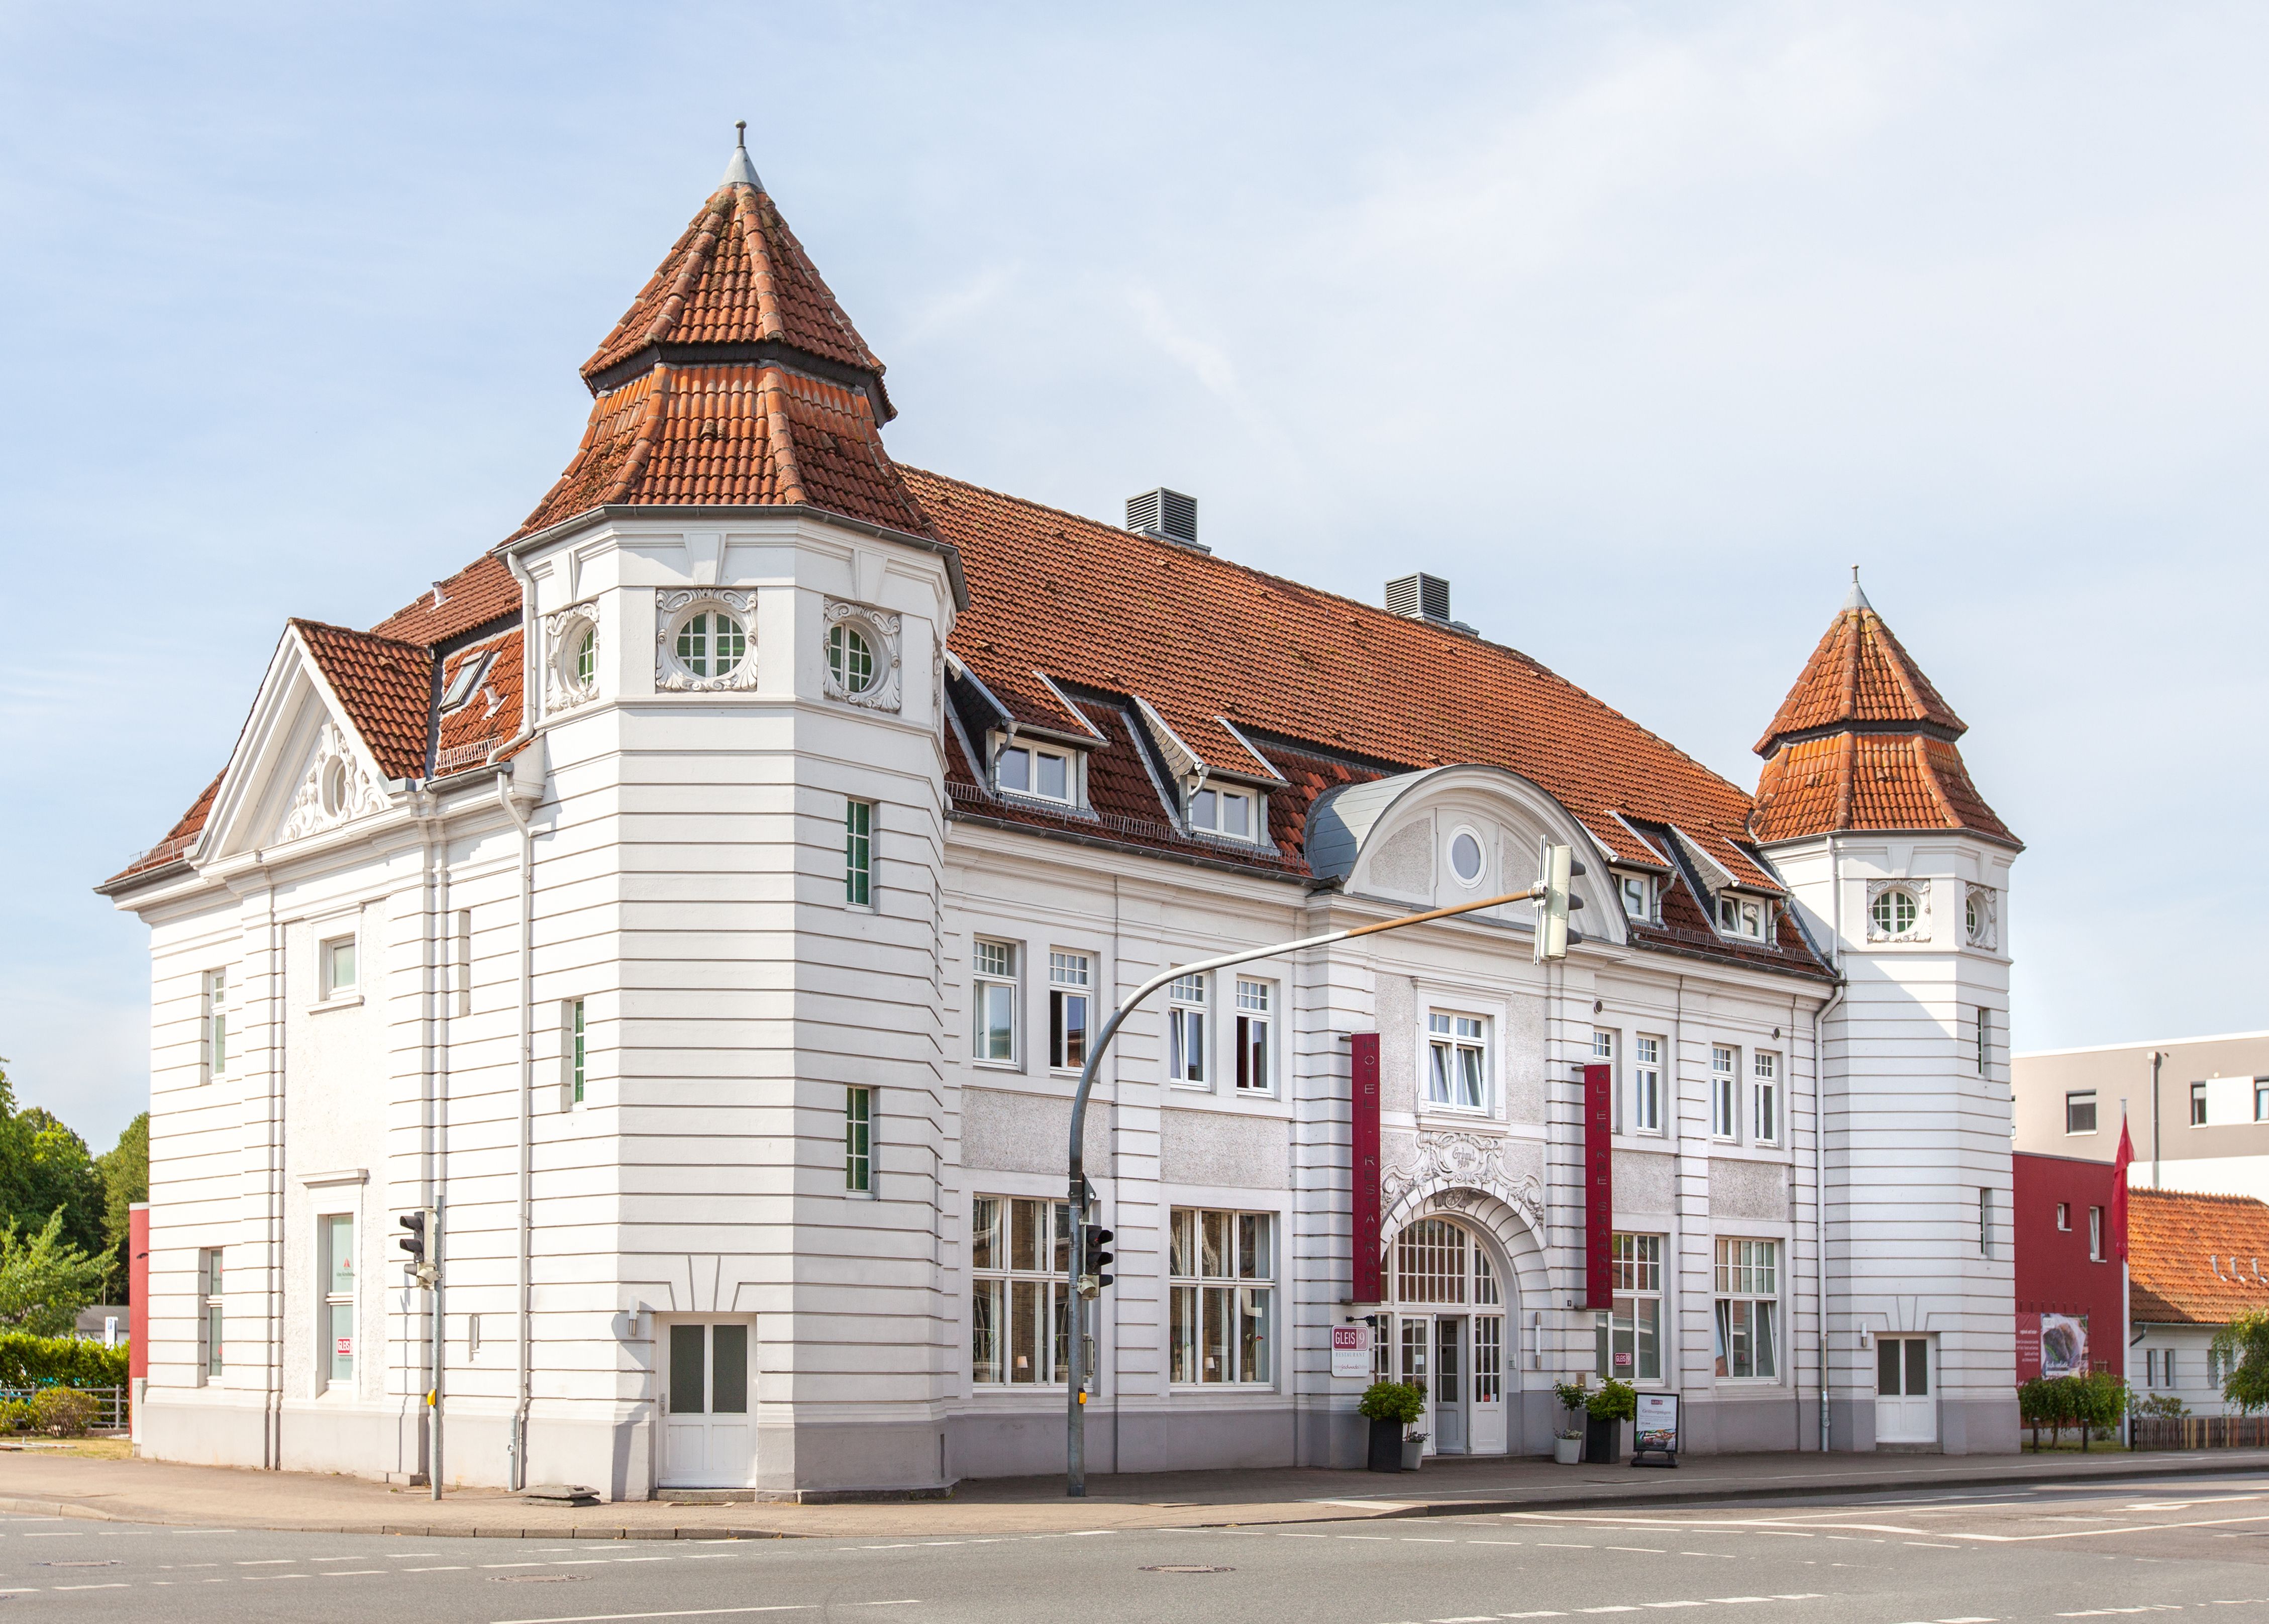 Hotel - Außenfassade
Historisches Bahnhofsgebäude aus dem Jahr 1904.